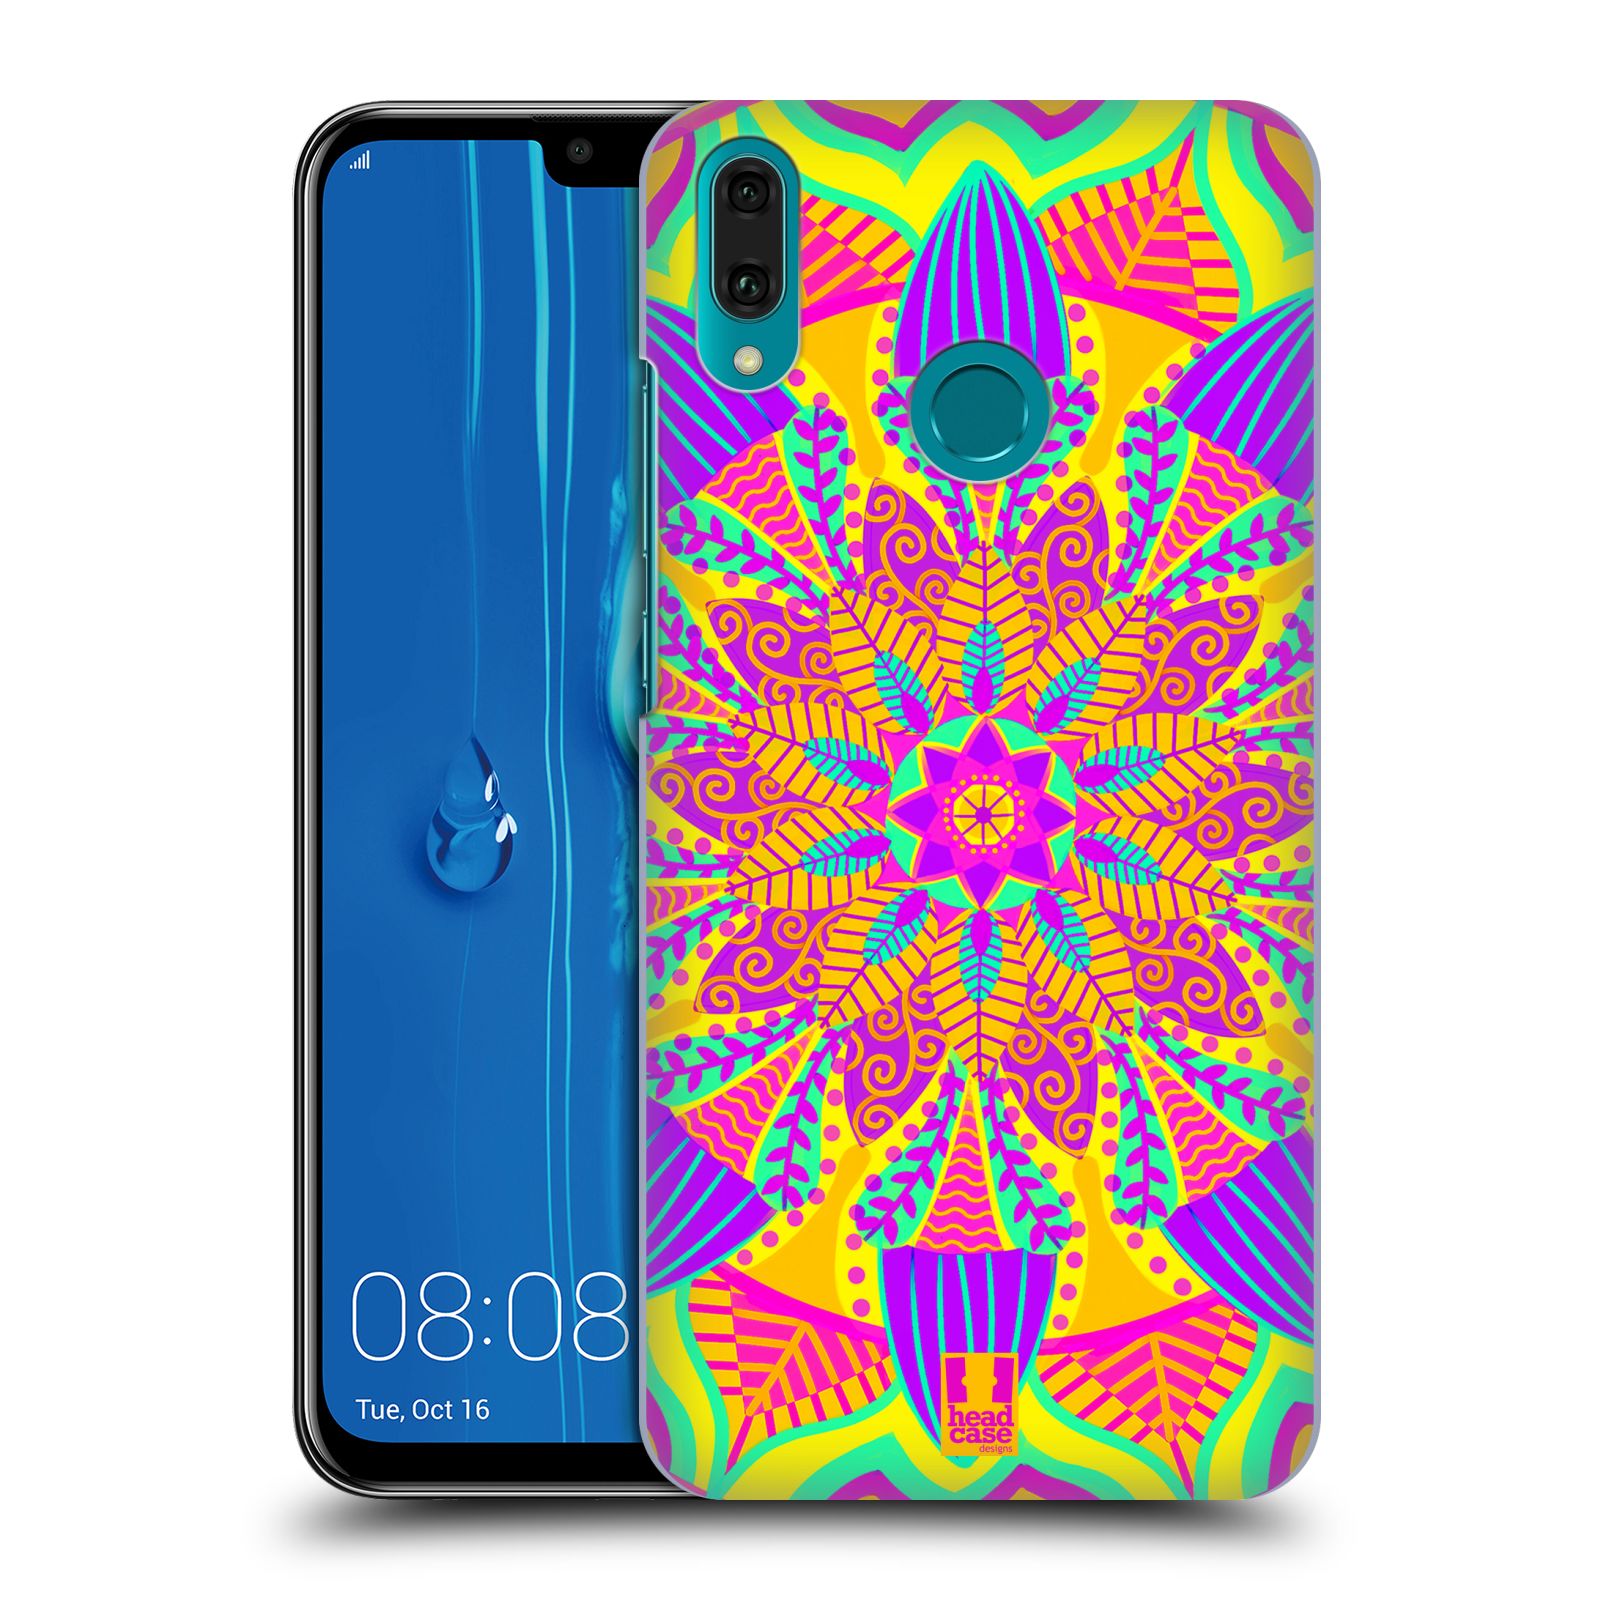 Pouzdro na mobil Huawei Y9 2019 - HEAD CASE - vzor Indie Mandala květinový motiv VÝCHOD SLUNCE LIMETKOVÁ